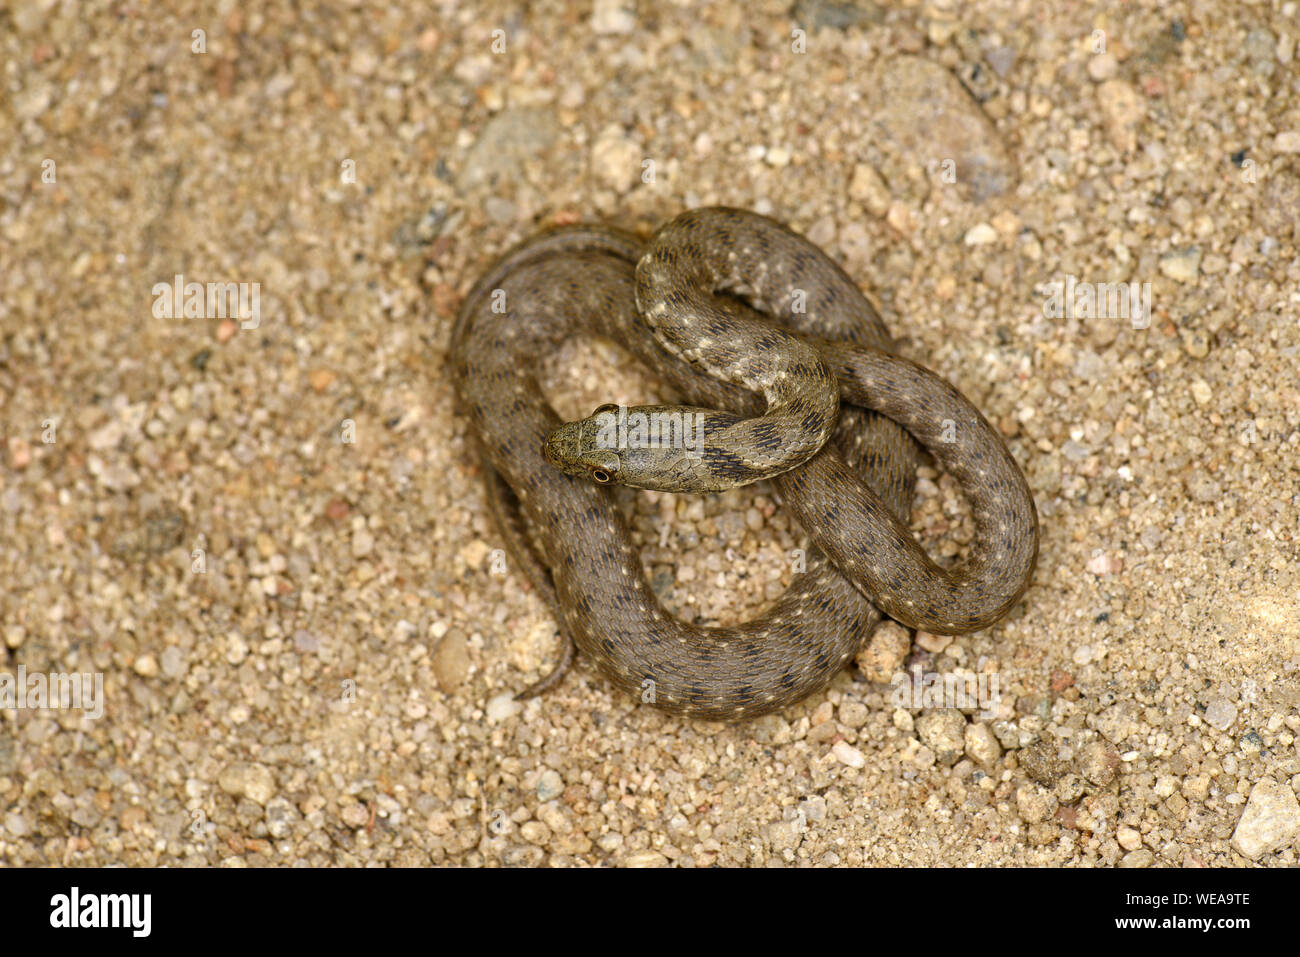 Snake (Natrix tessellata dés) reposant sur le sable, recroquevillé, Bulgarie, Avril Banque D'Images